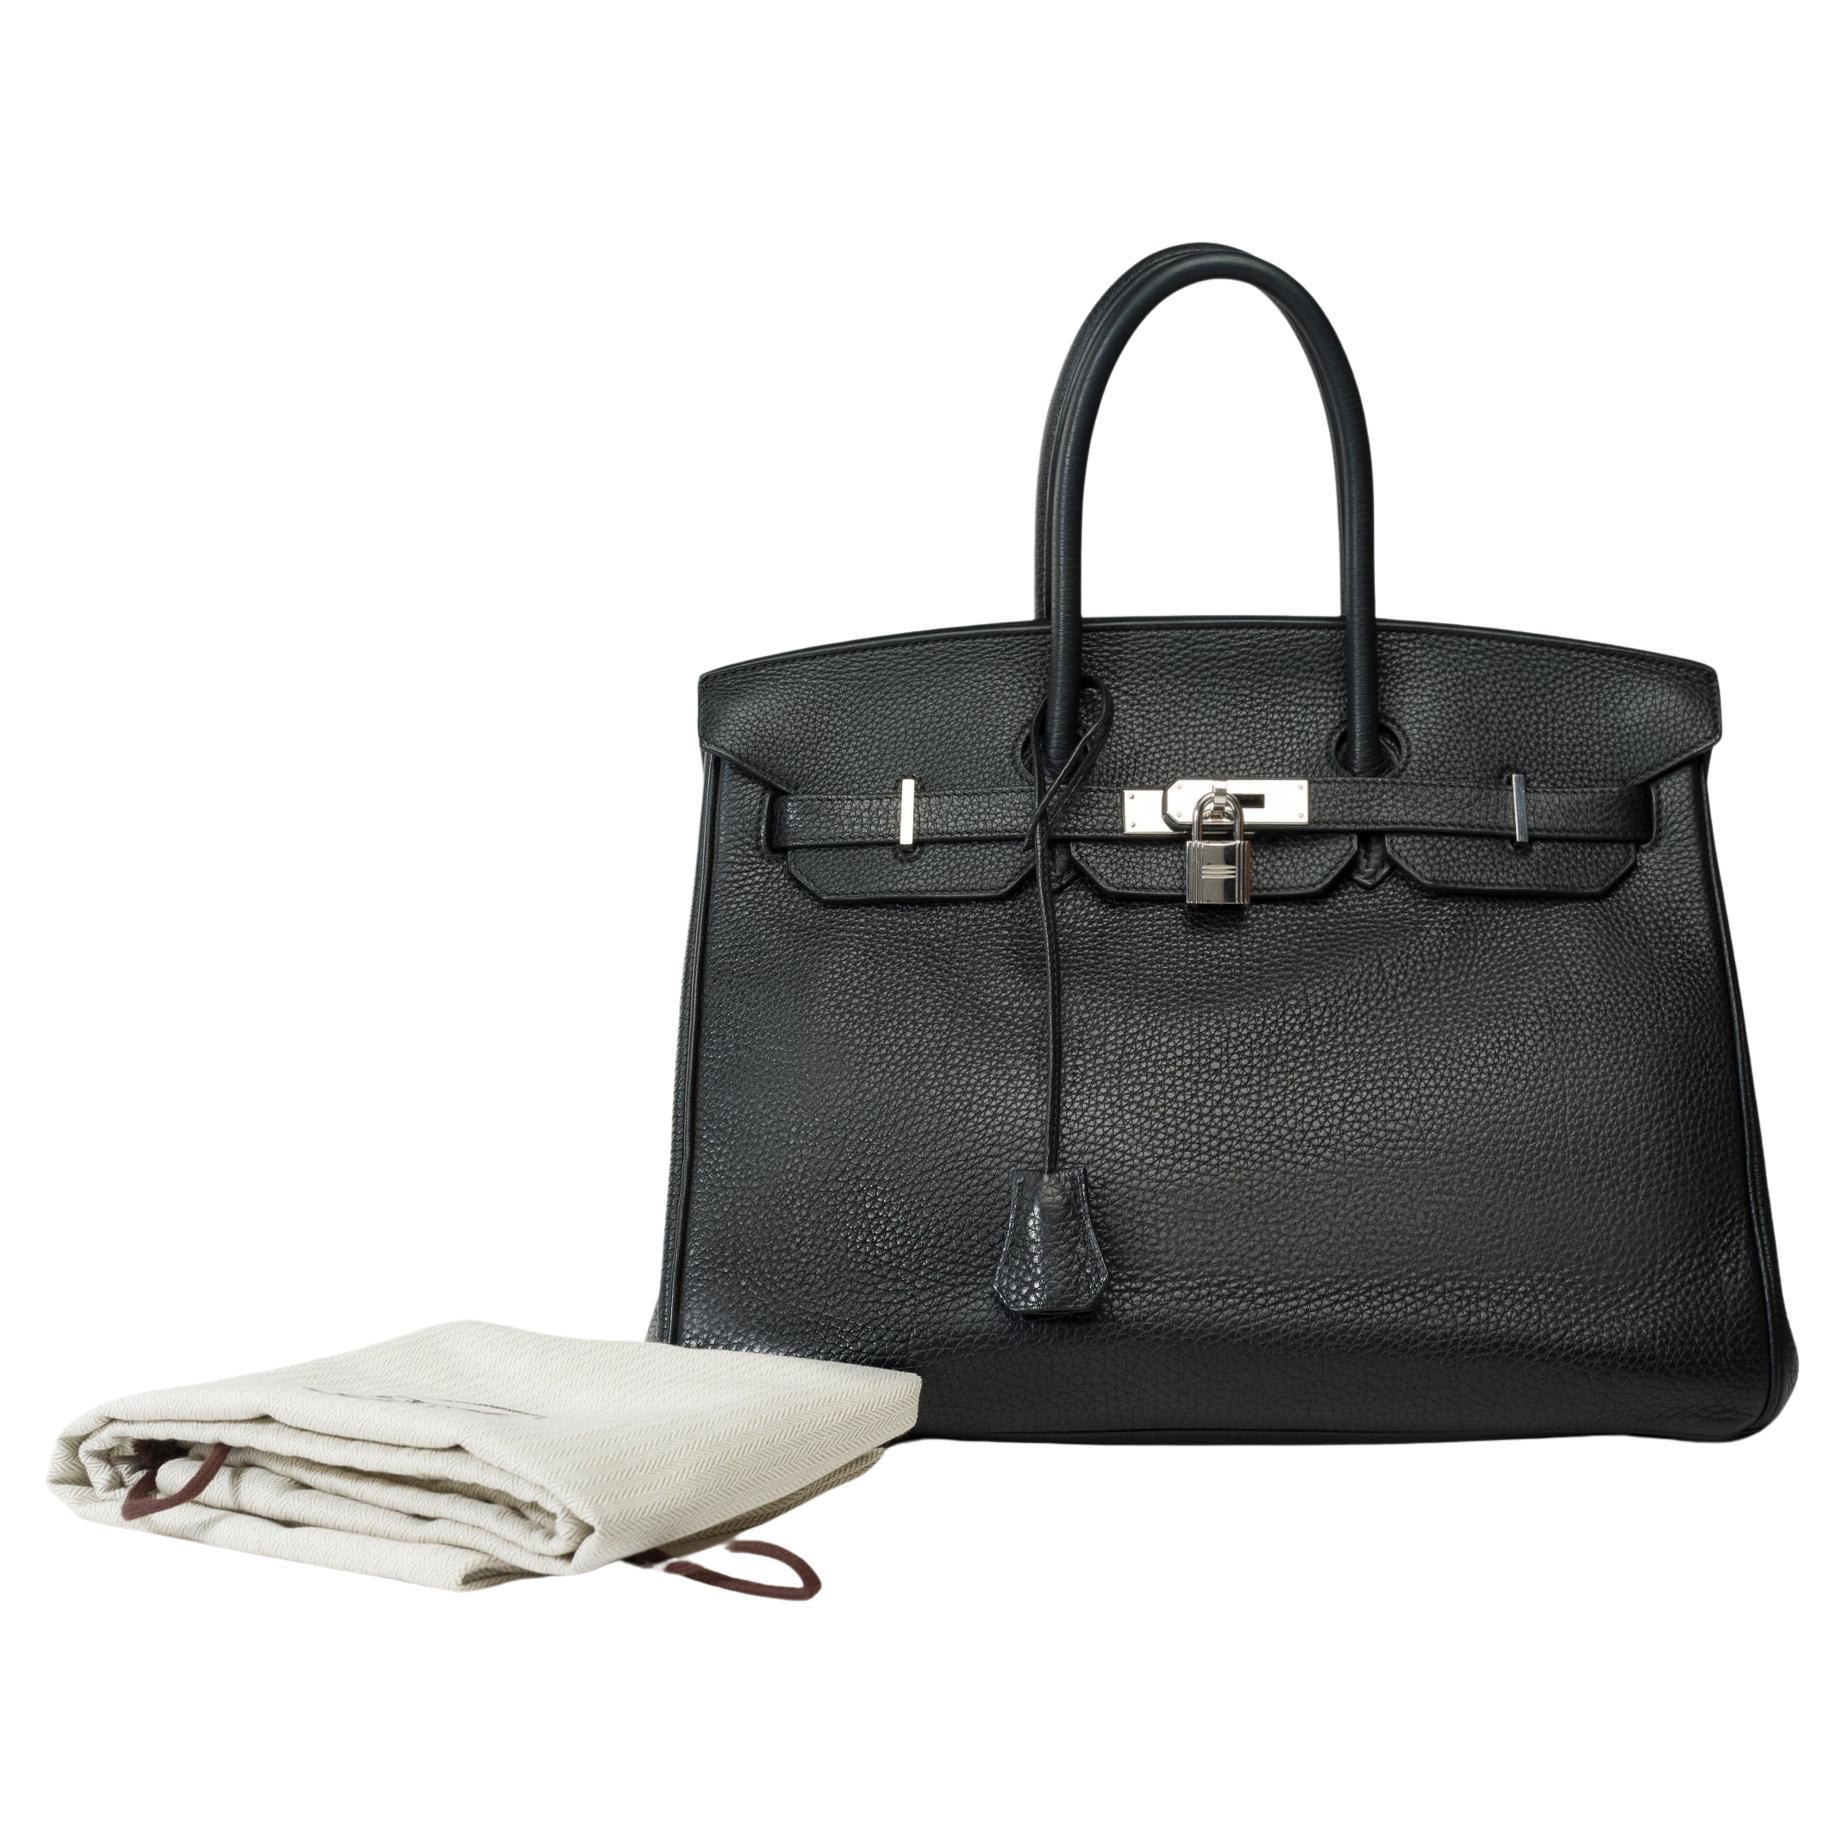 Stunning Hermes Birkin 30 handbag in Black Togo leather, SHW For Sale